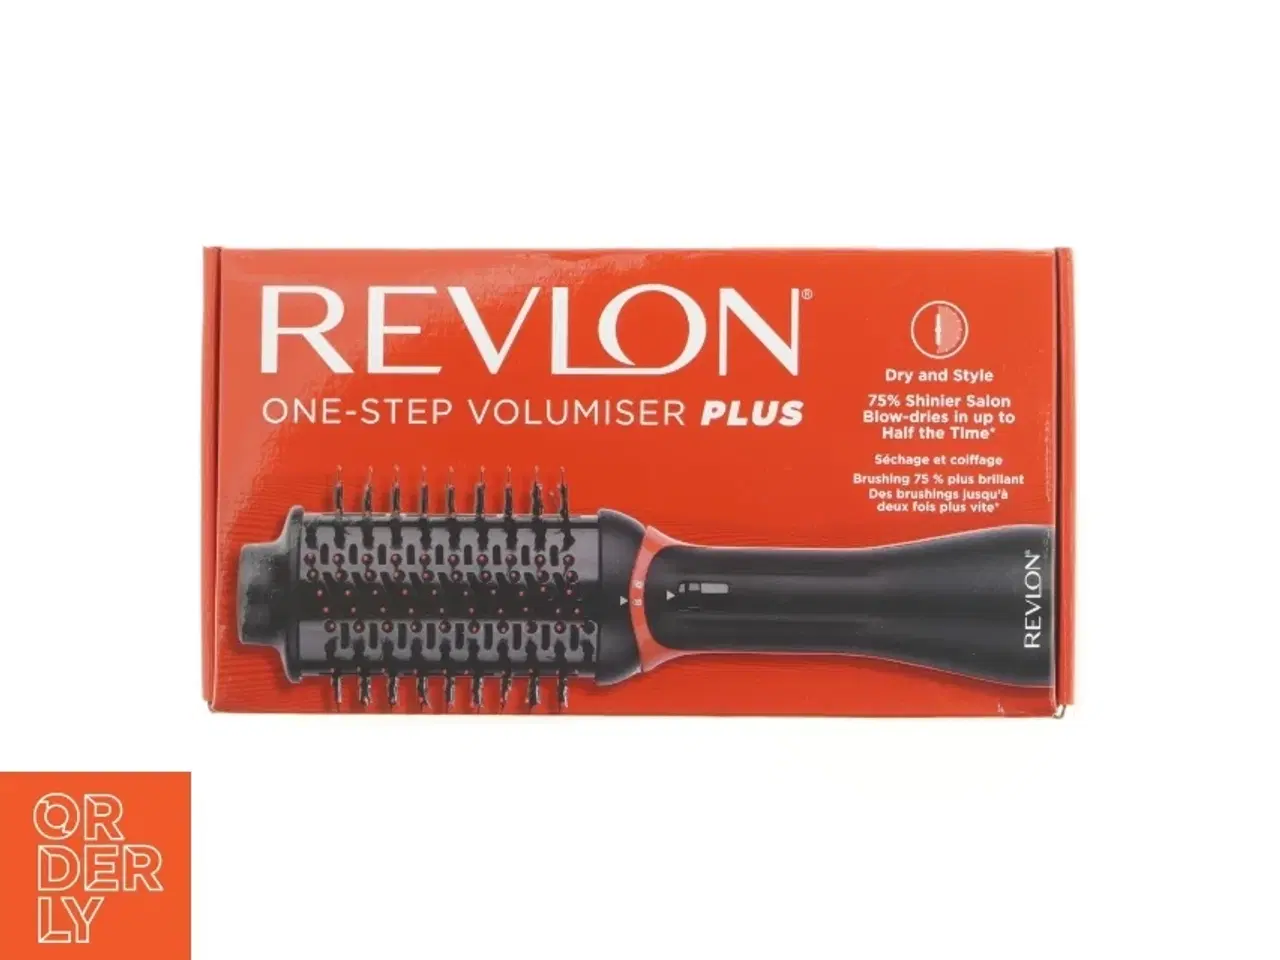 Billede 1 - Revlon One-Step Volumizer Plus fra Revlon (str. 36 cm)